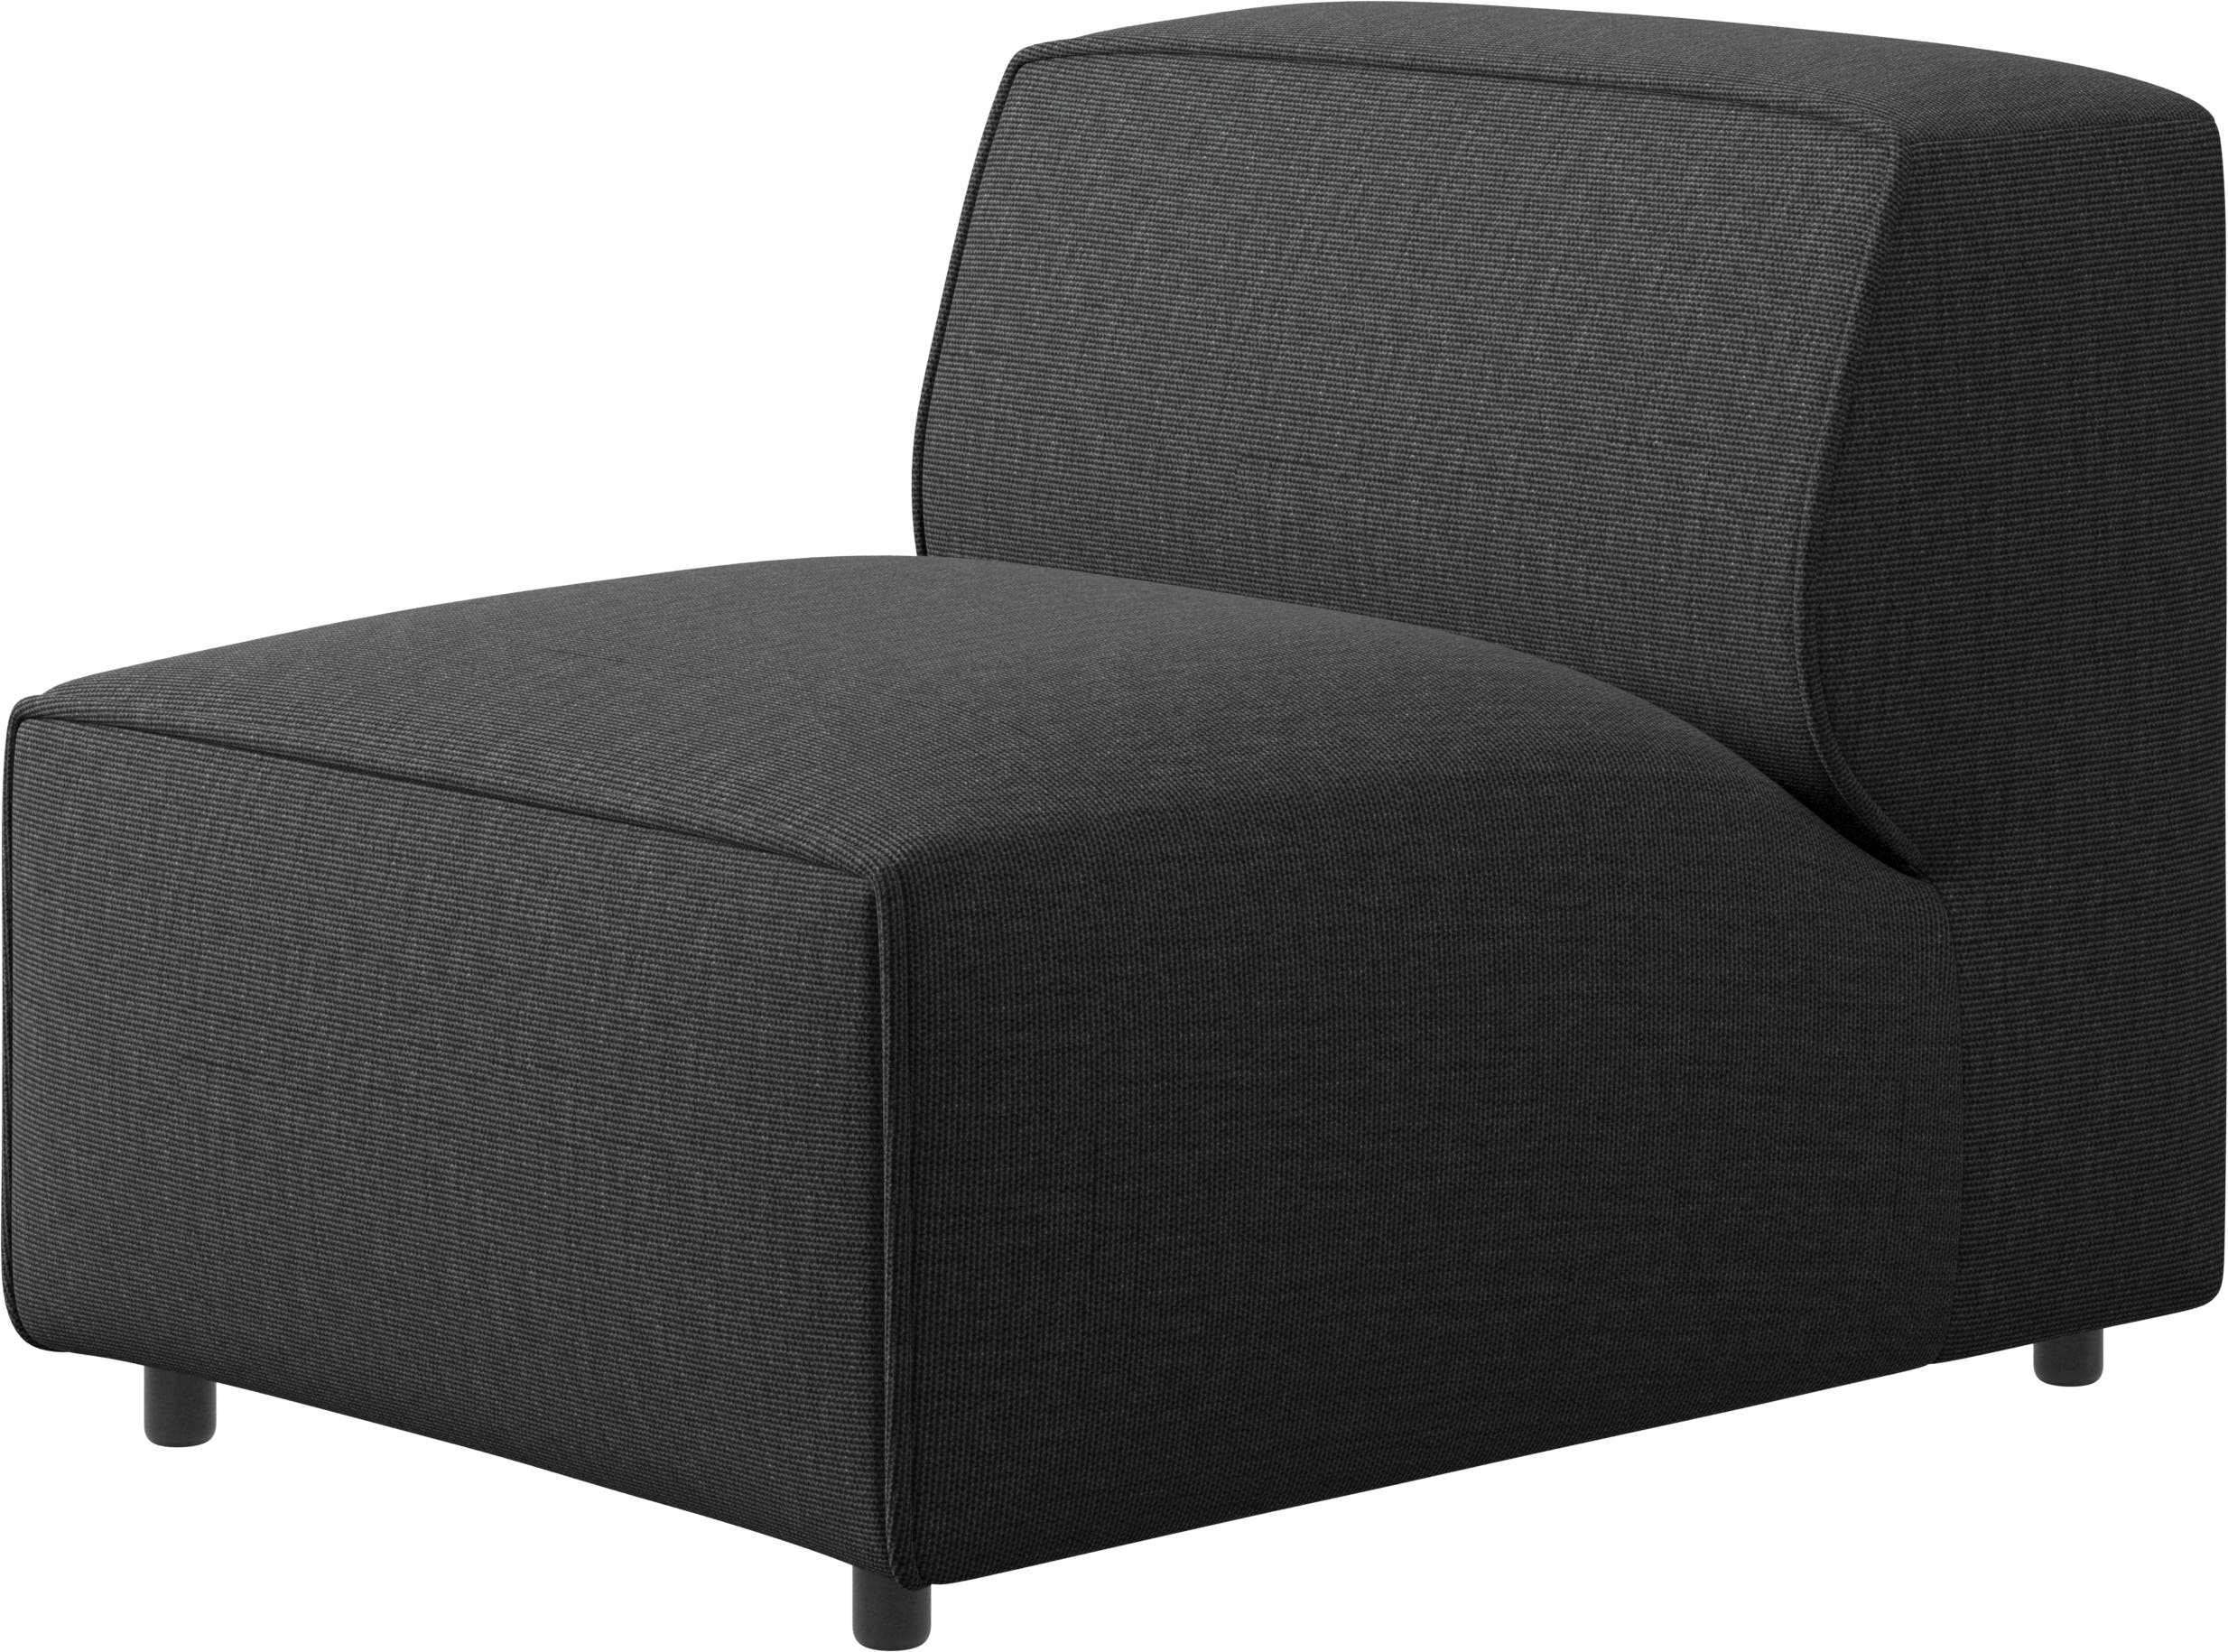 Carmo stol/kombinert grunnmodul til sofa/stol